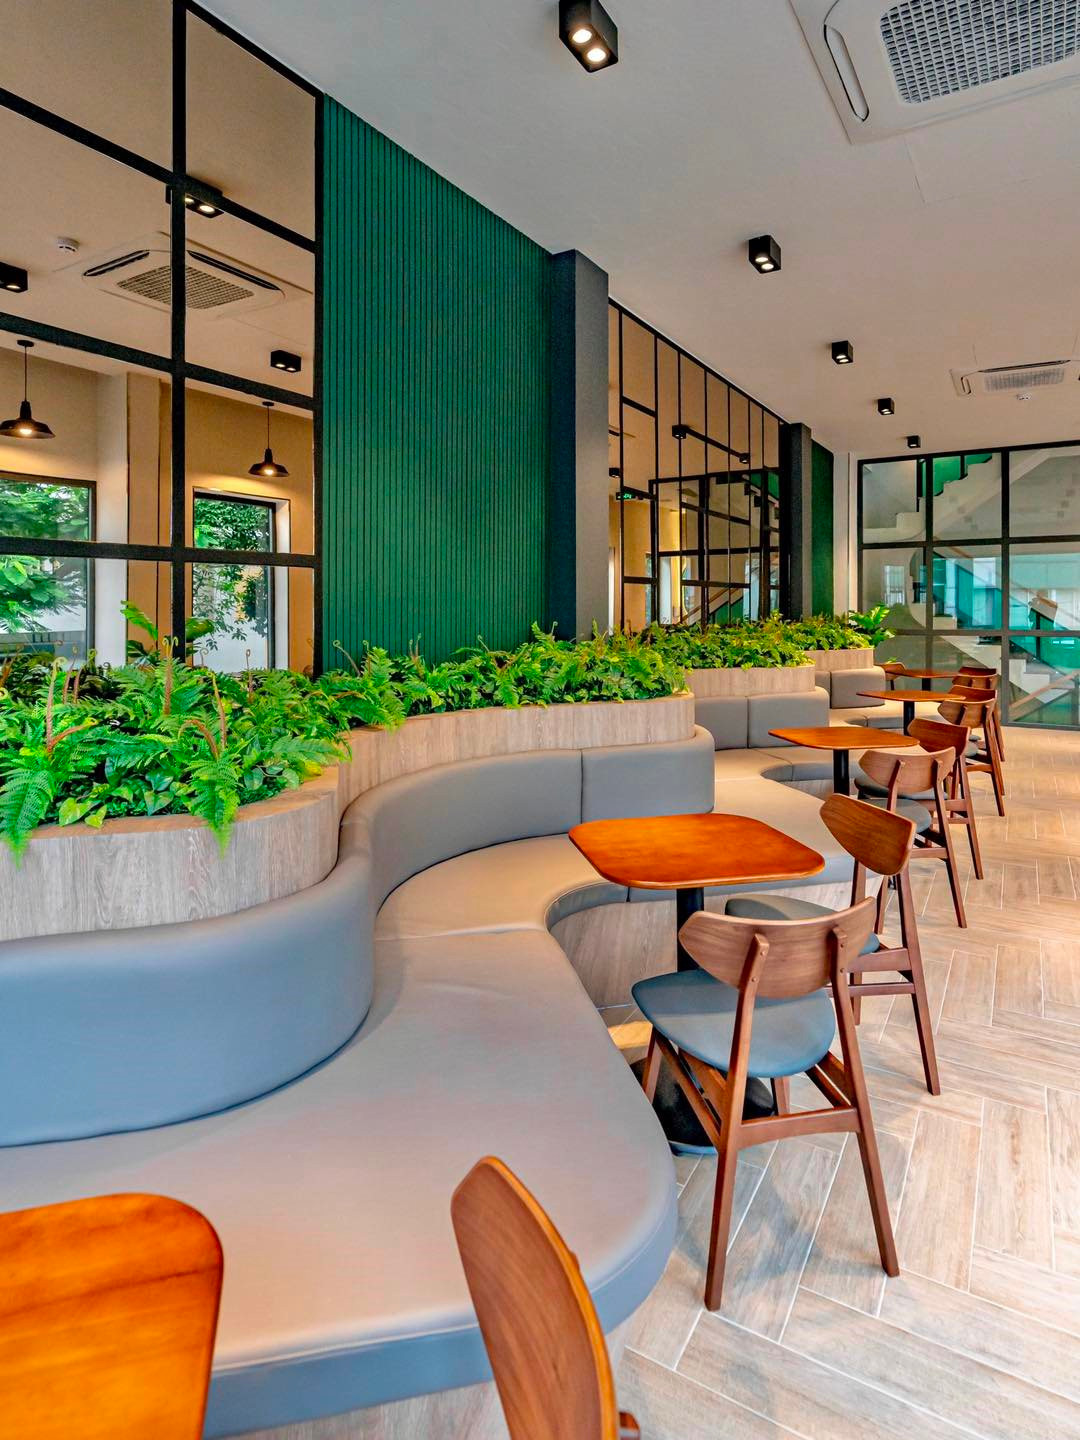 Café Amazon – chuỗi cà phê lớn Thái Lan thận trọng ở thị trường Việt Nam: Có 20 cửa hàng sau 2 năm, chưa tính Bắc tiến - Ảnh 2.